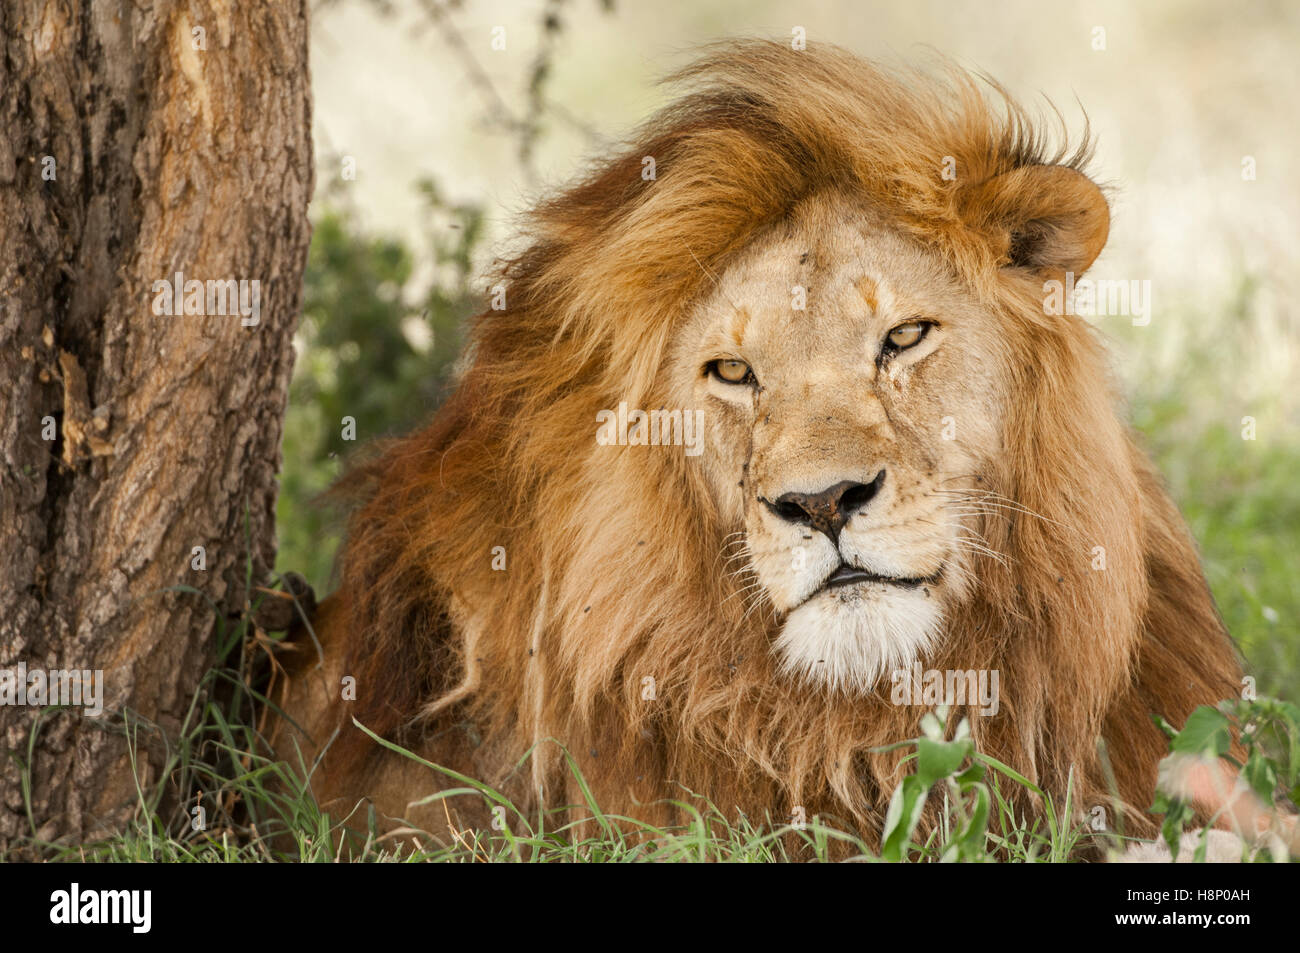 Male Lion (Panthera leo) with light mane, Ndutu, Ngorongoro Conservation Area, Tanzania Stock Photo